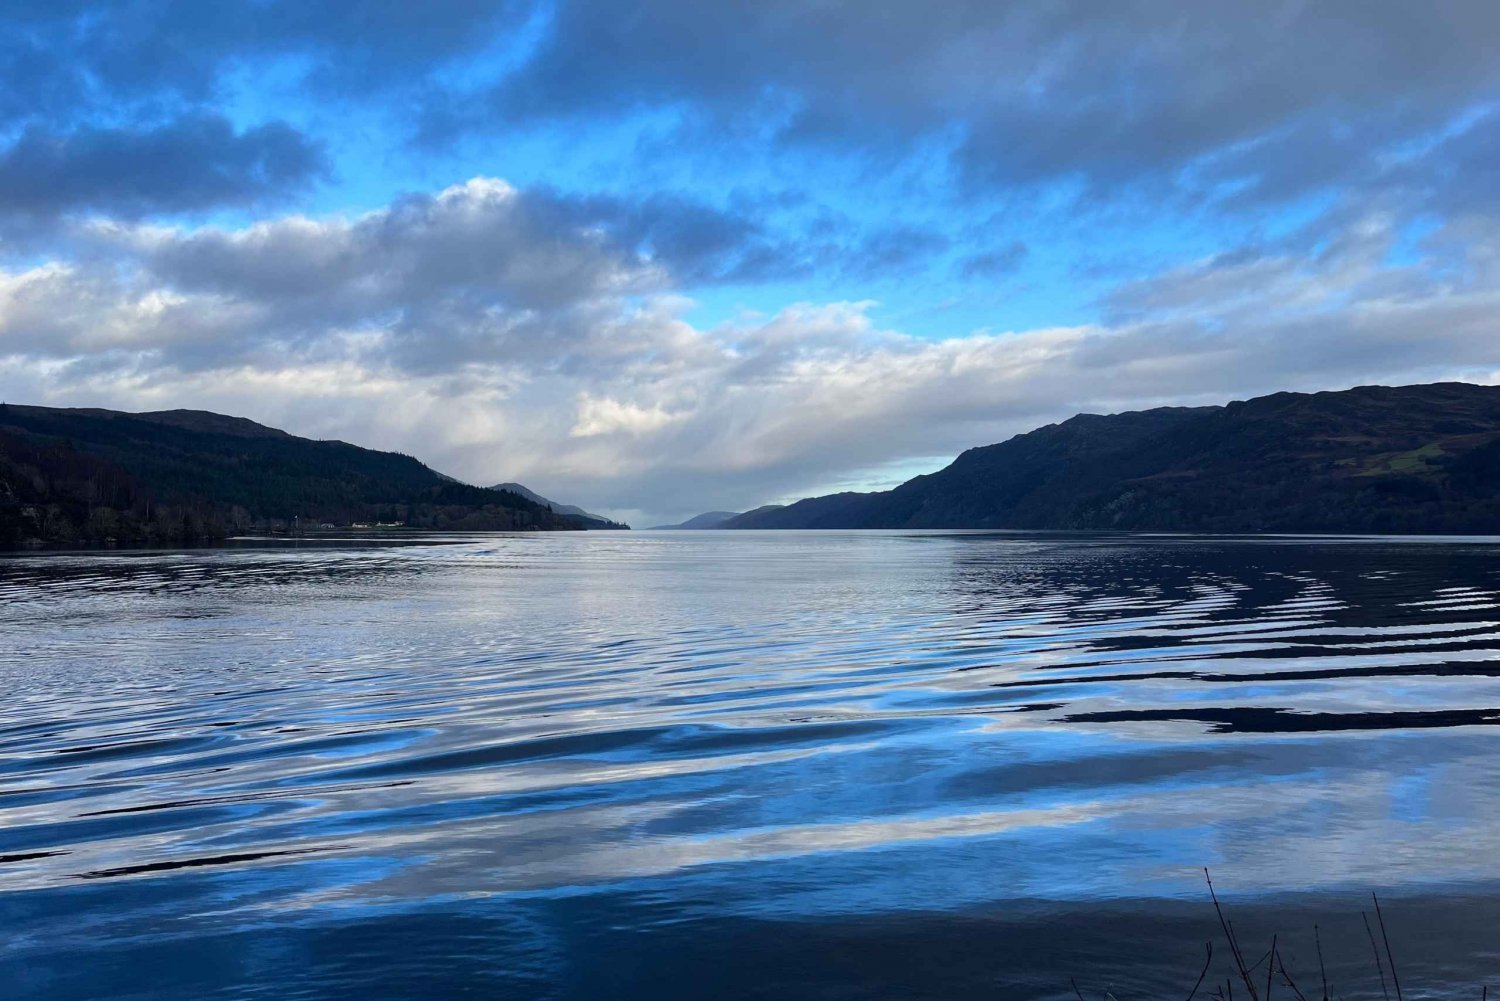 Desde Edimburgo: Excursión de un día al Lago Ness, Glencoe y las Tierras Altas